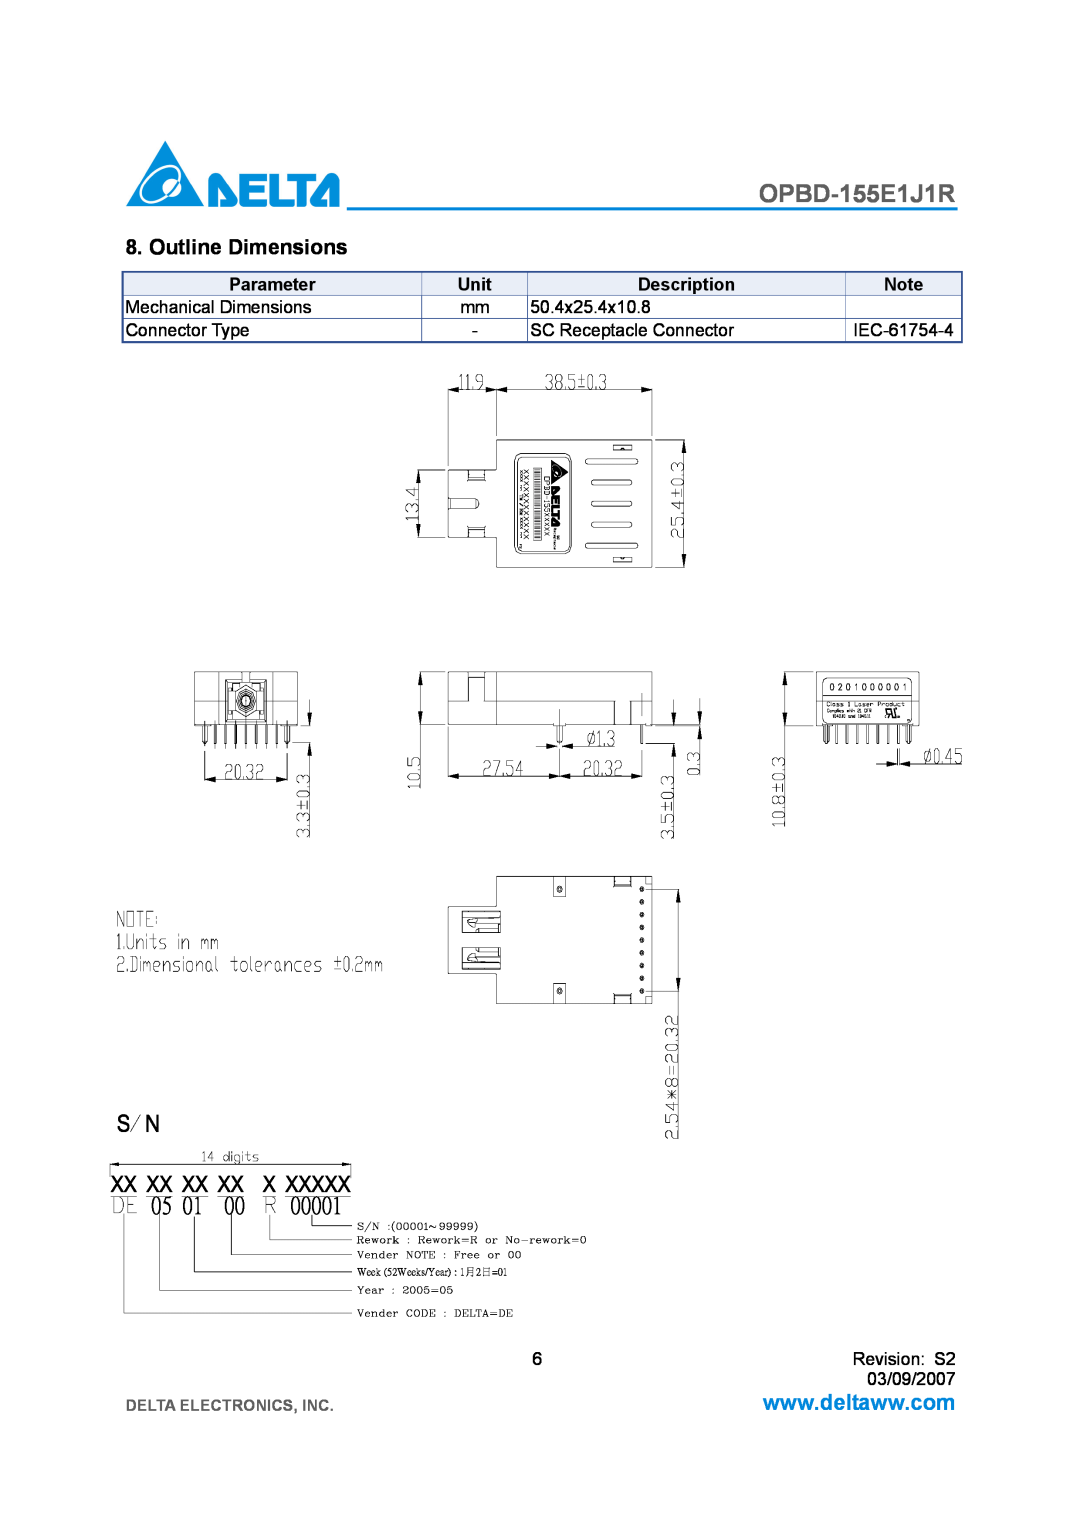 Delta Electronics OPBD-155E1J1R manual Outline Dimensions, Parameter, Unit, Description, Delta Electronics, Inc 